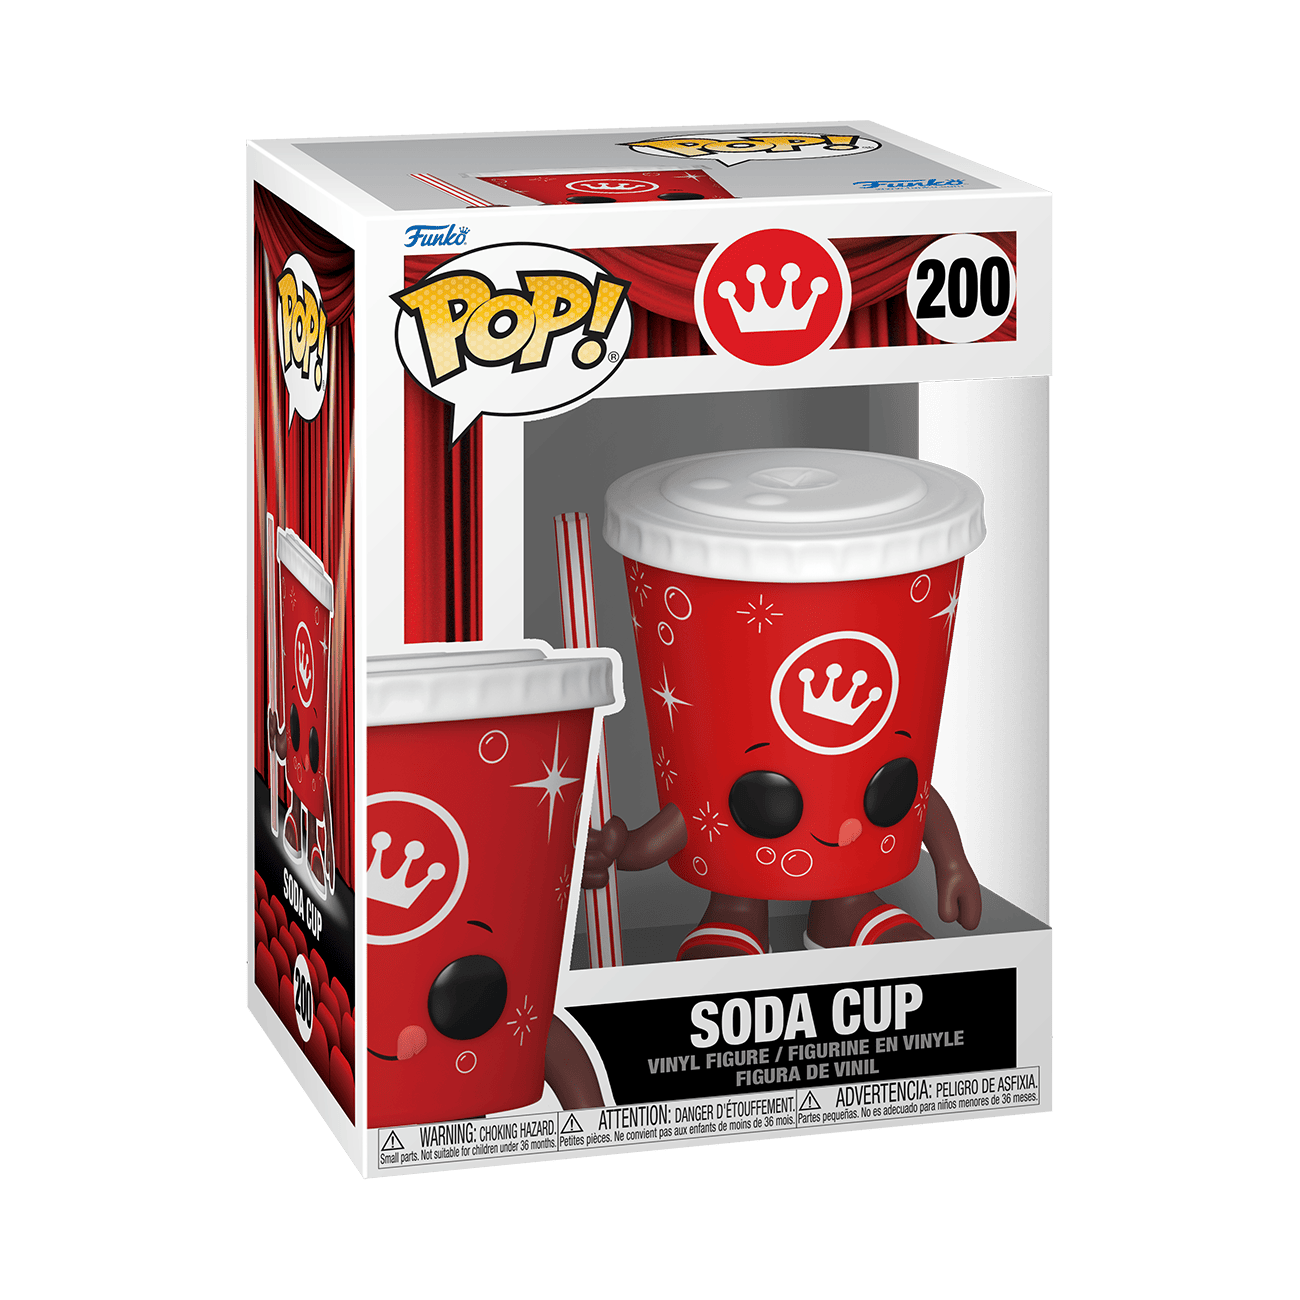 Buy Pop! Soda Cup at Funko.